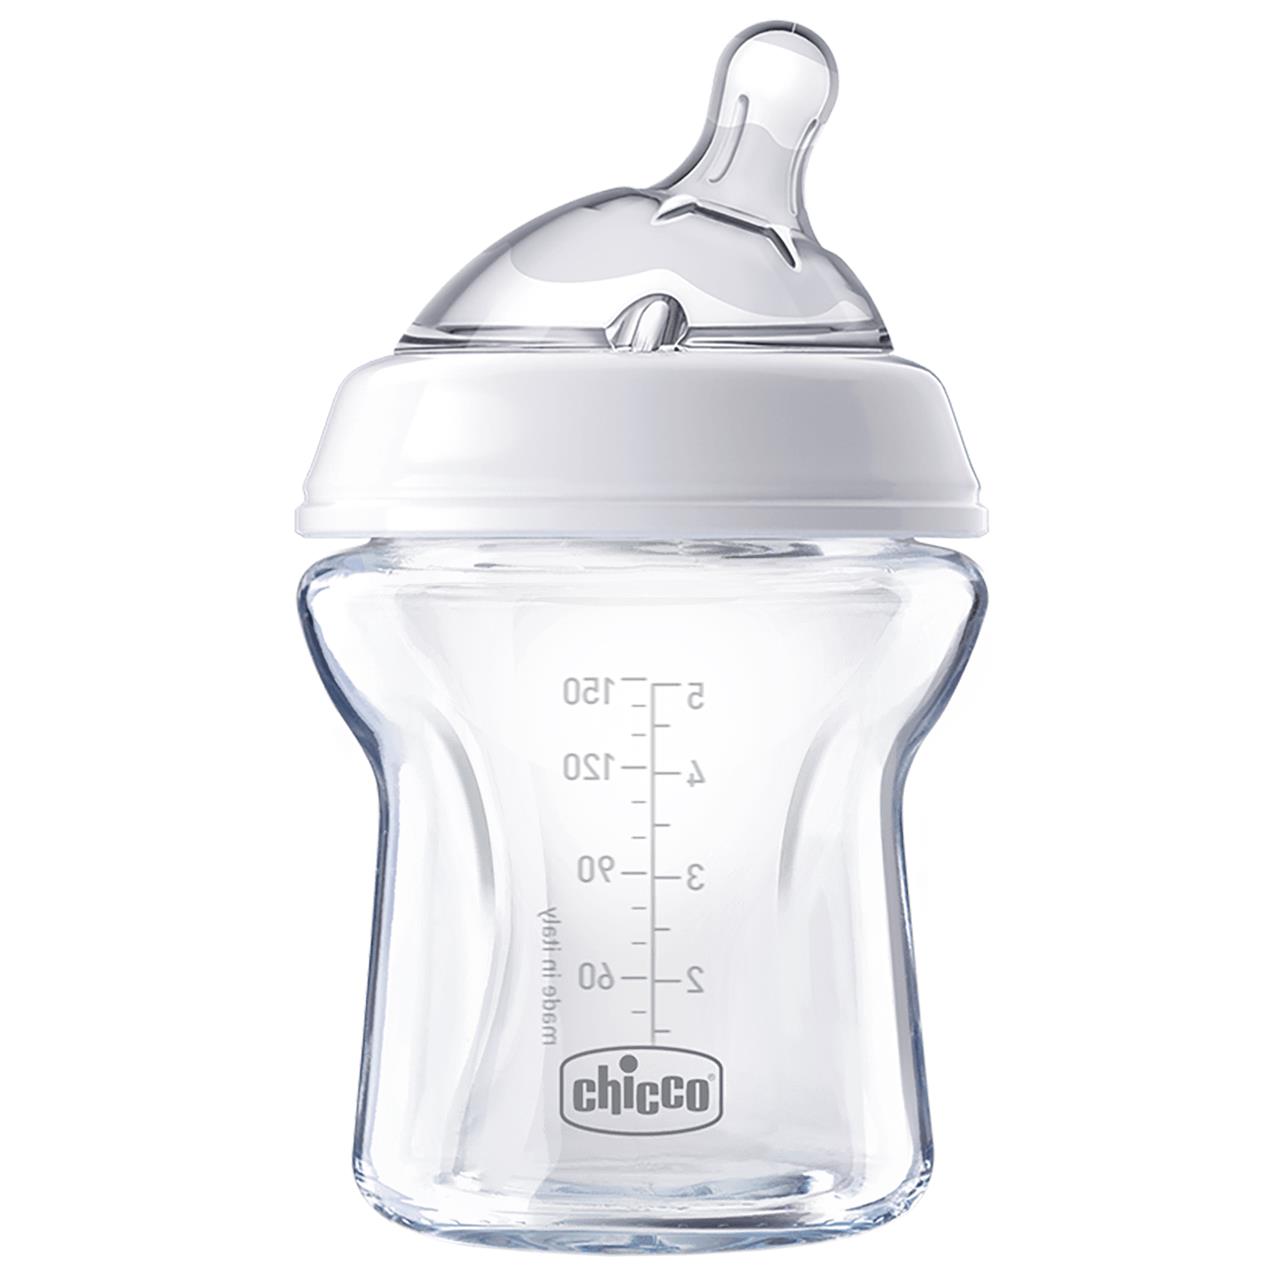 Chicco Nursing Glass Bottle: NaturalFeeling – 150ml 0m+ Teat